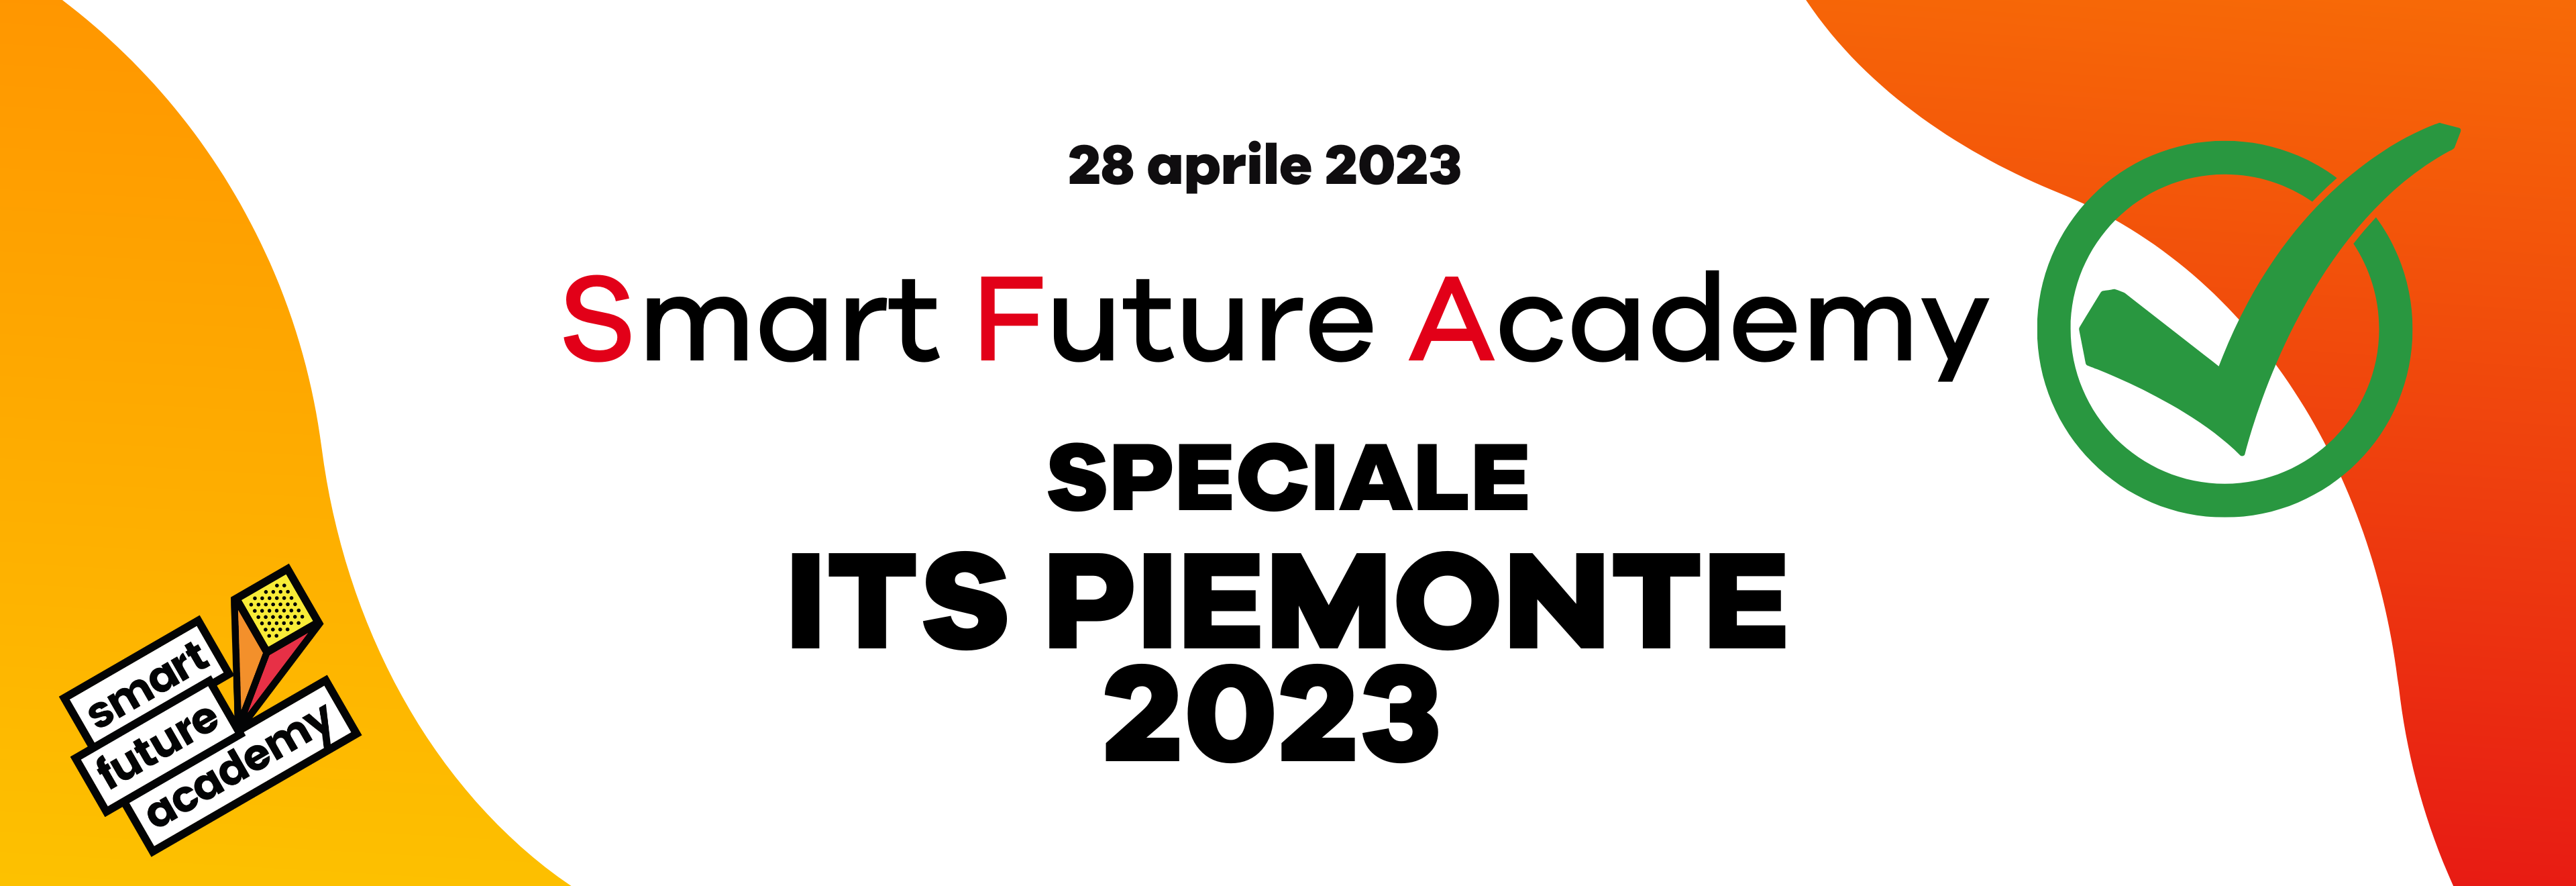 Speciale ITS Piemonte 2023 Online